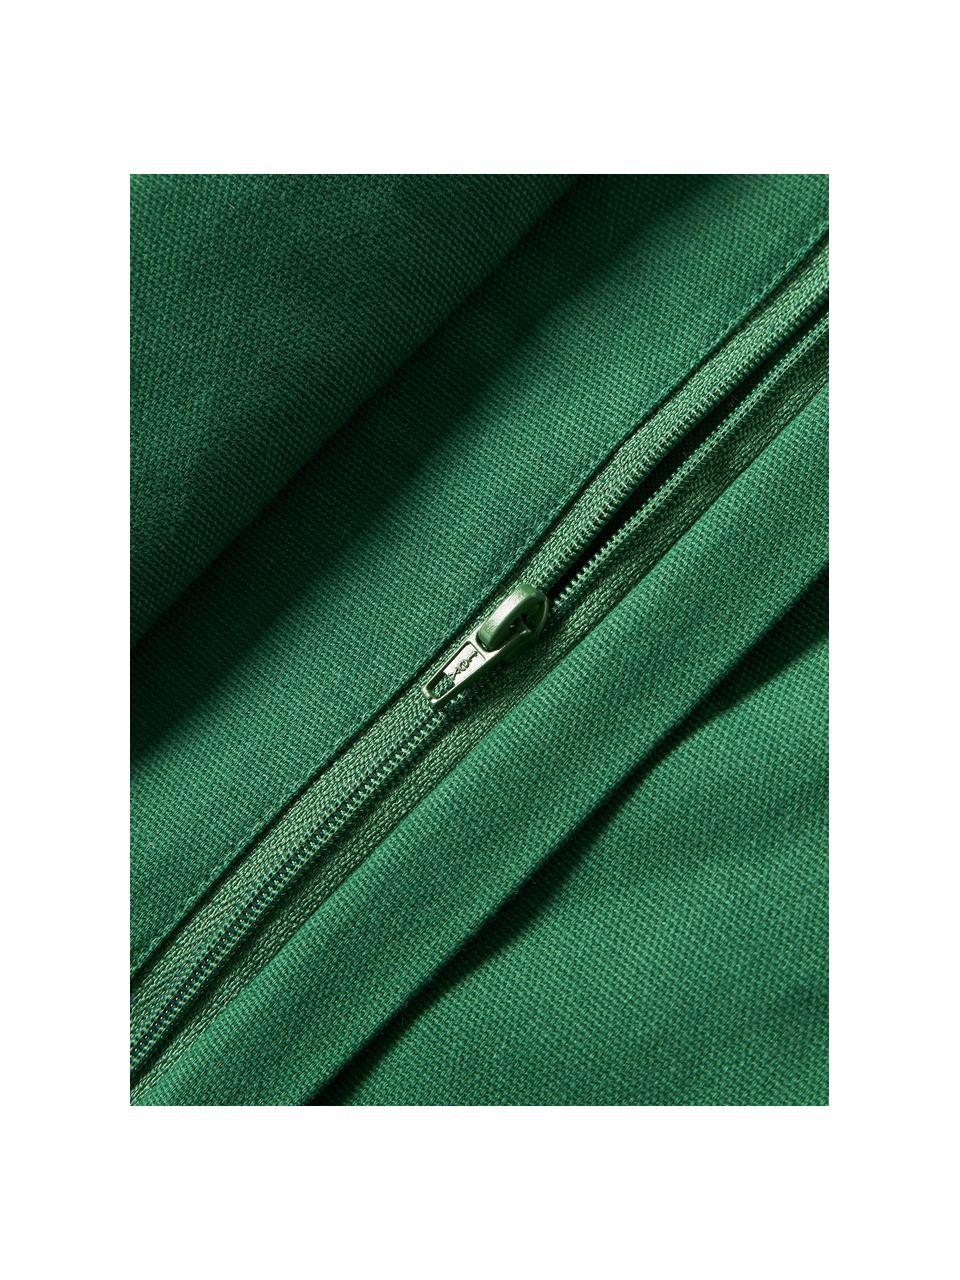 Poszewka na poduszkę z aksamitu z haftem i lamówką Holly Jolly, Aksamit (100% bawełna), Ciemny zielony, S 30 x D 50 cm